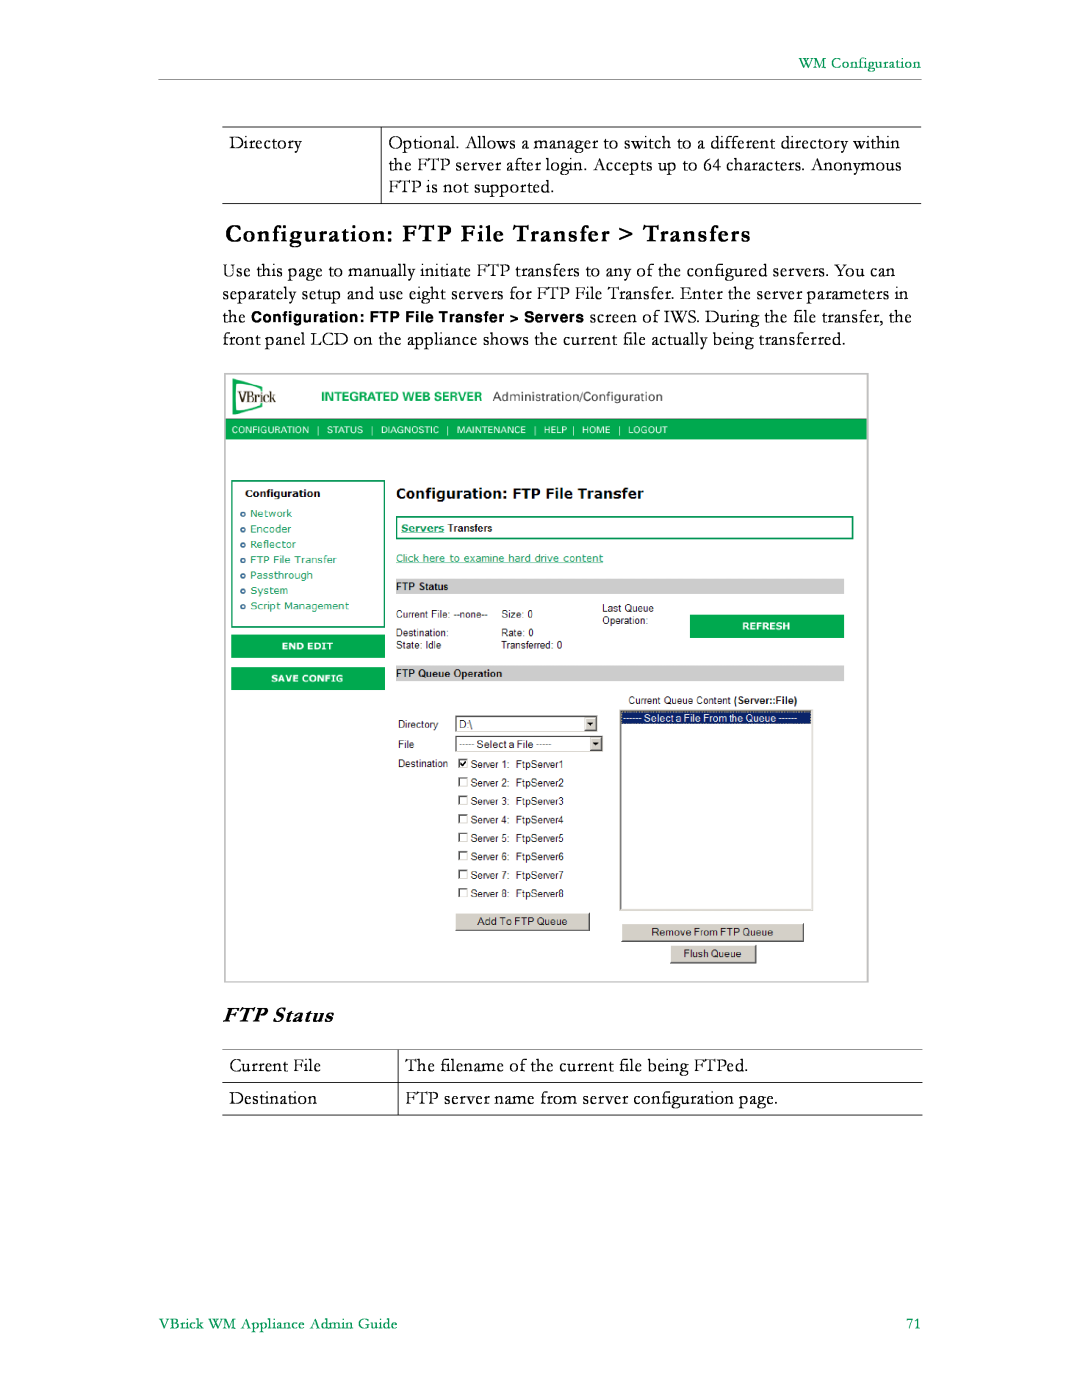 VBrick Systems VB6000, VB4000, VB5000 manual Configuration FTP File Transfer Transfers, FTP Status 